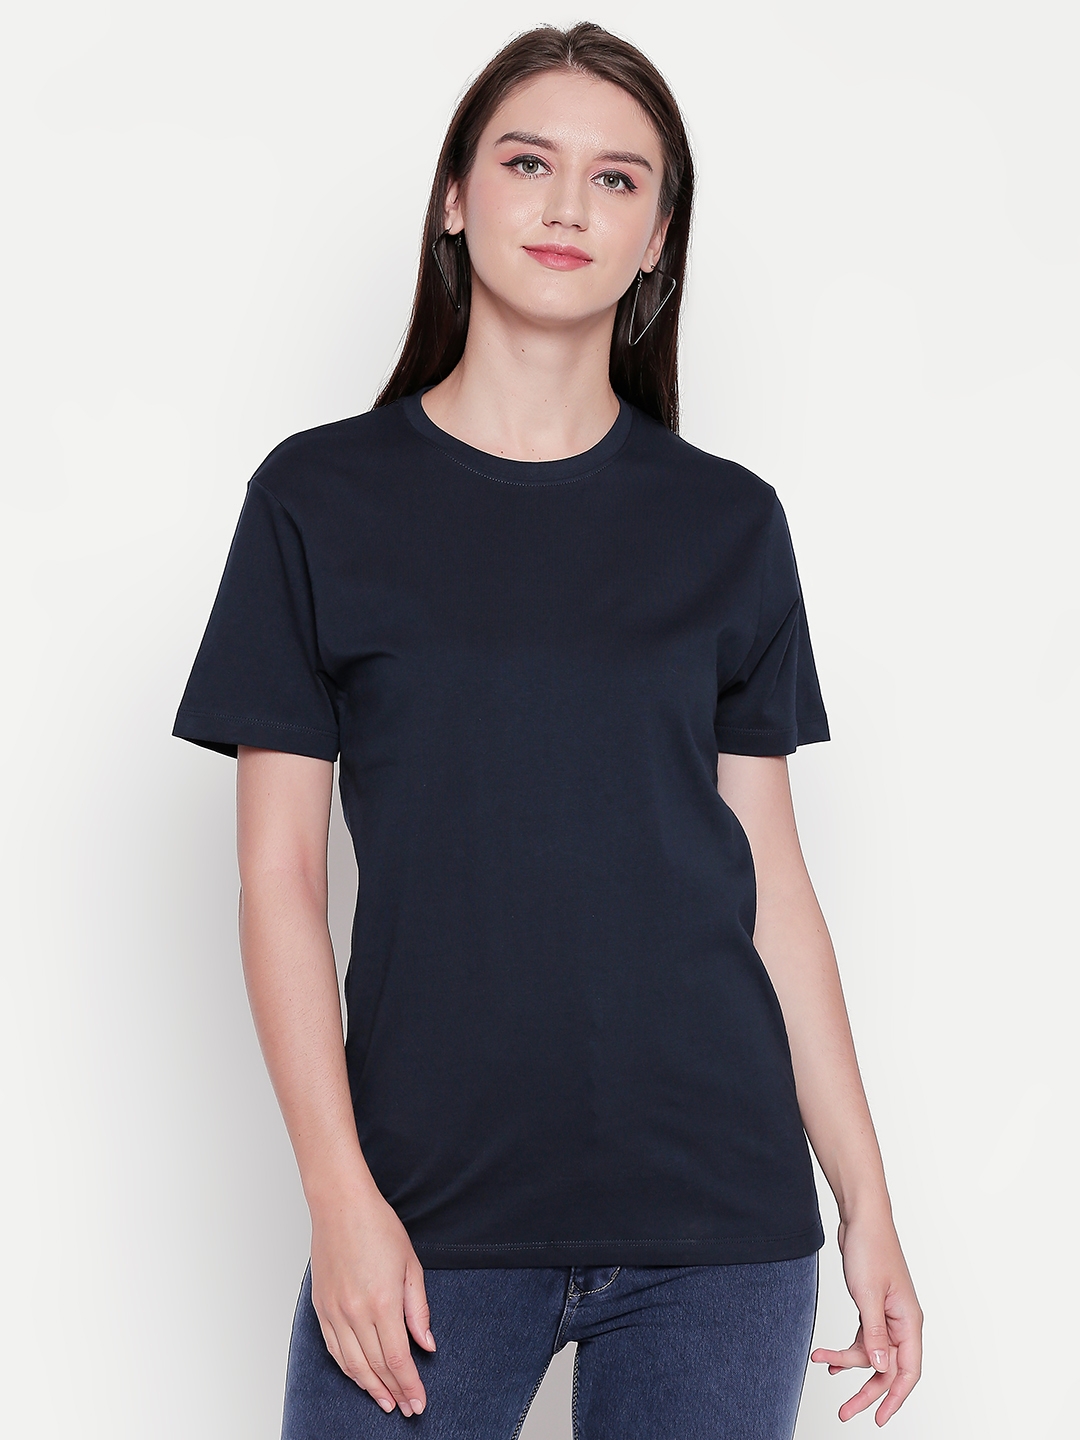 creativeideas.store | Black Plain Tshirt